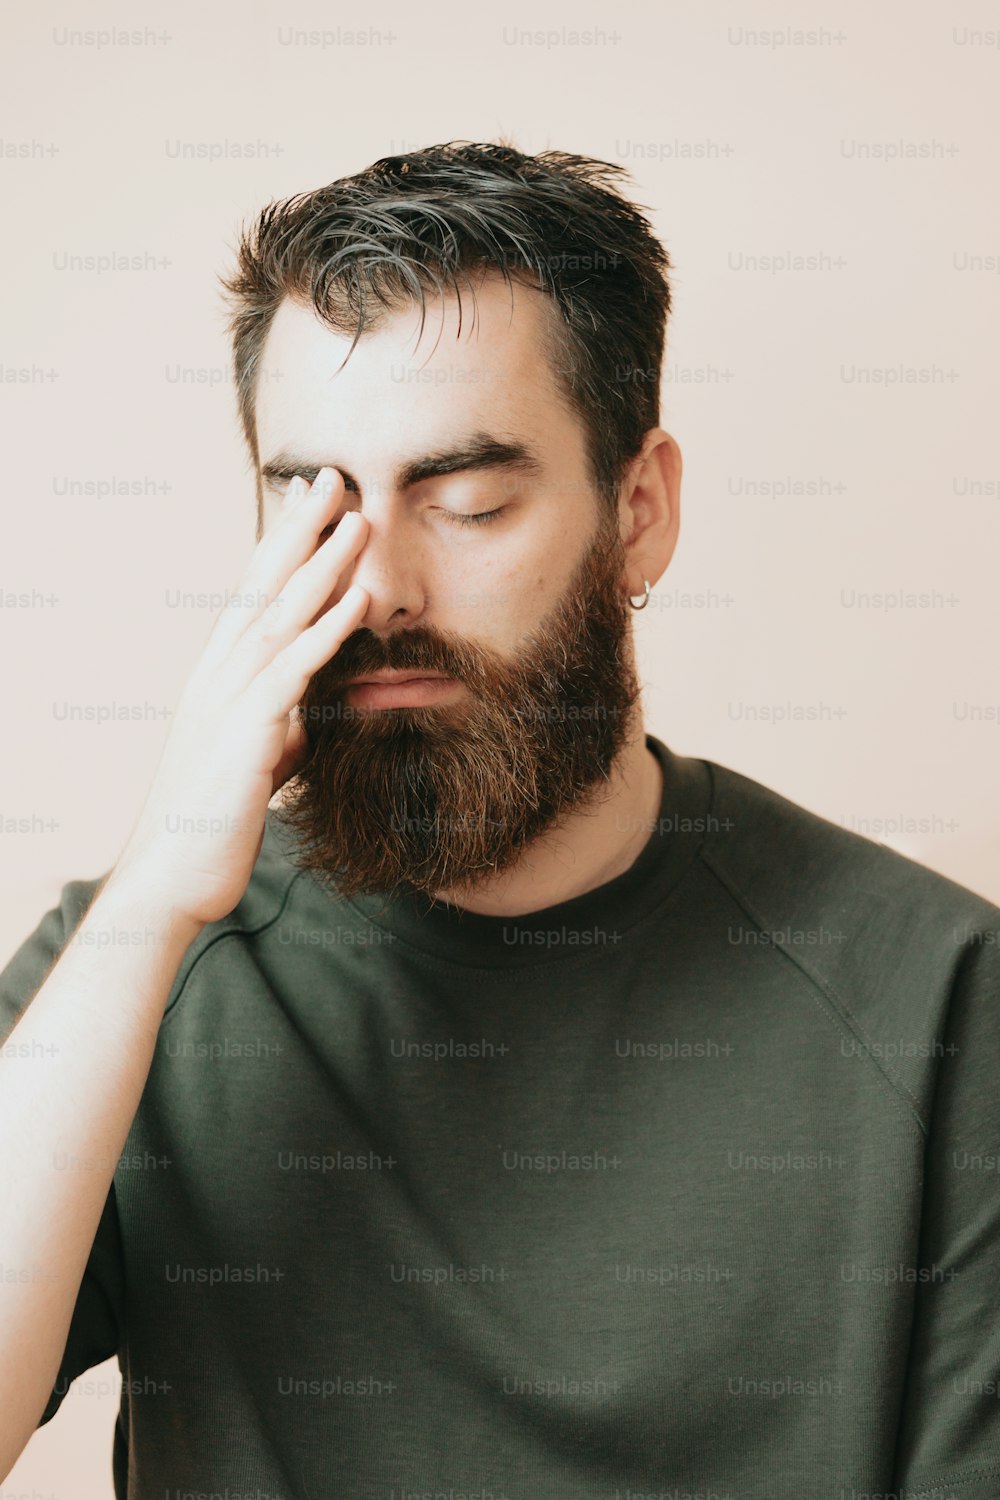 Un uomo con la barba si tiene la mano sul viso